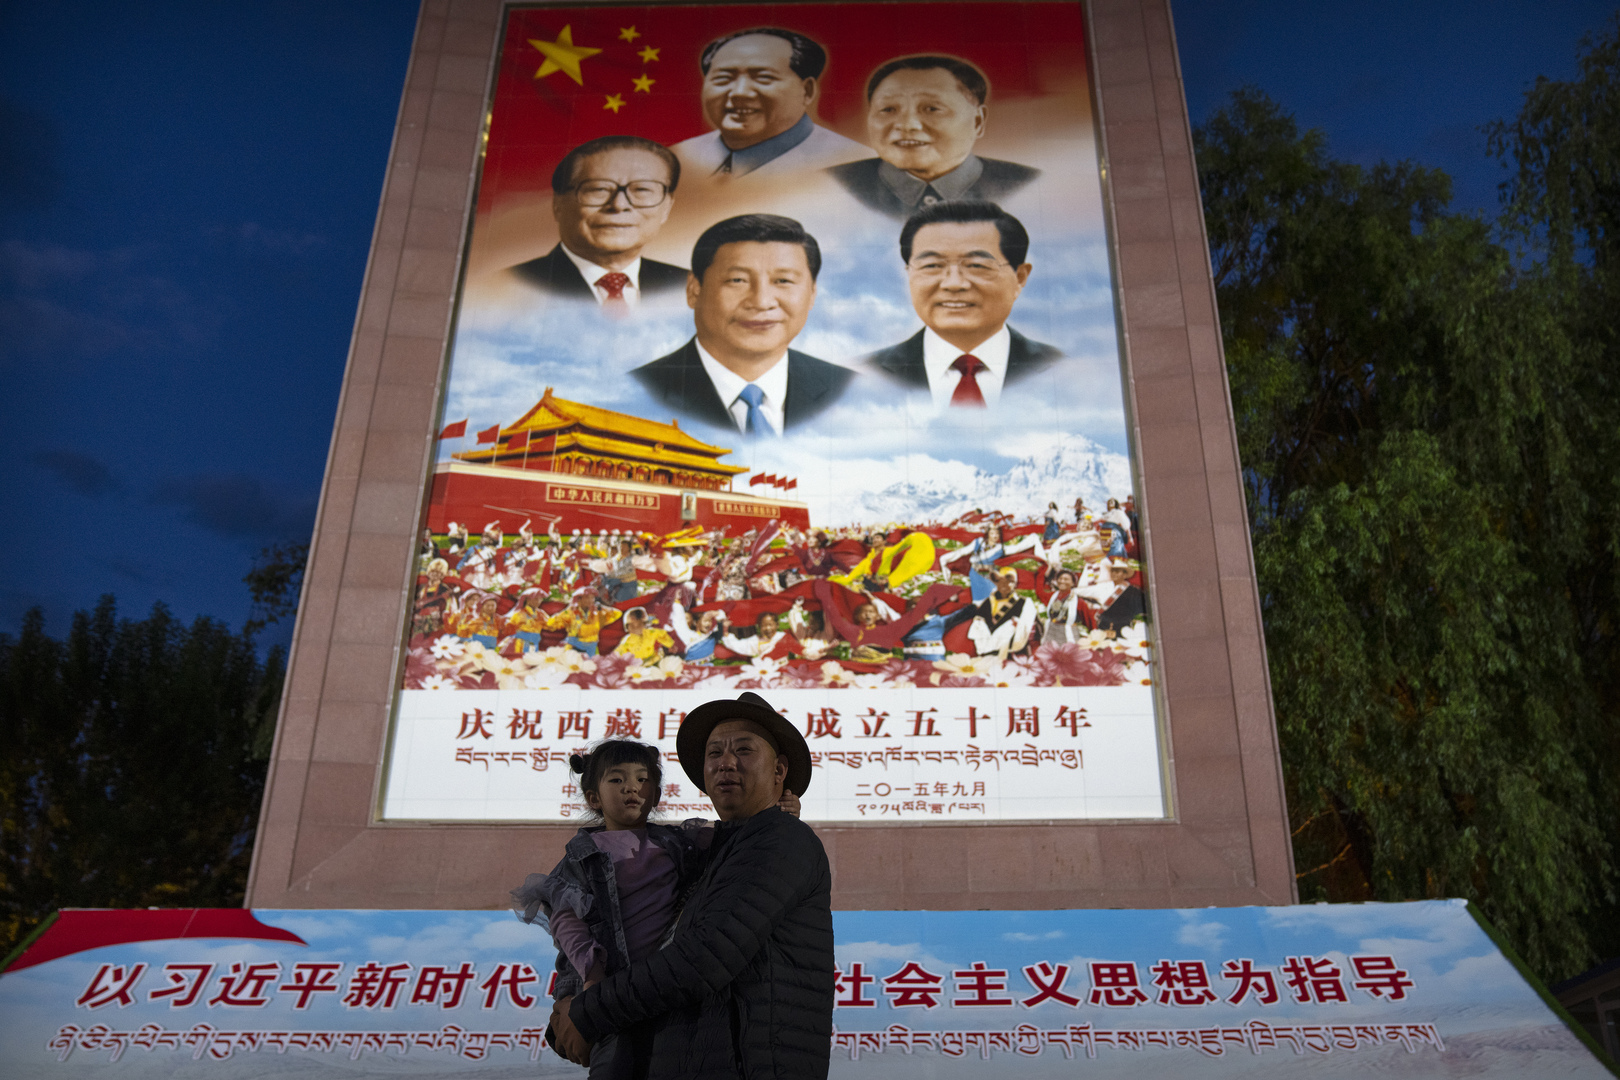 الرئيس الصيني يزور التبت وسط تزايد القيود على الدين